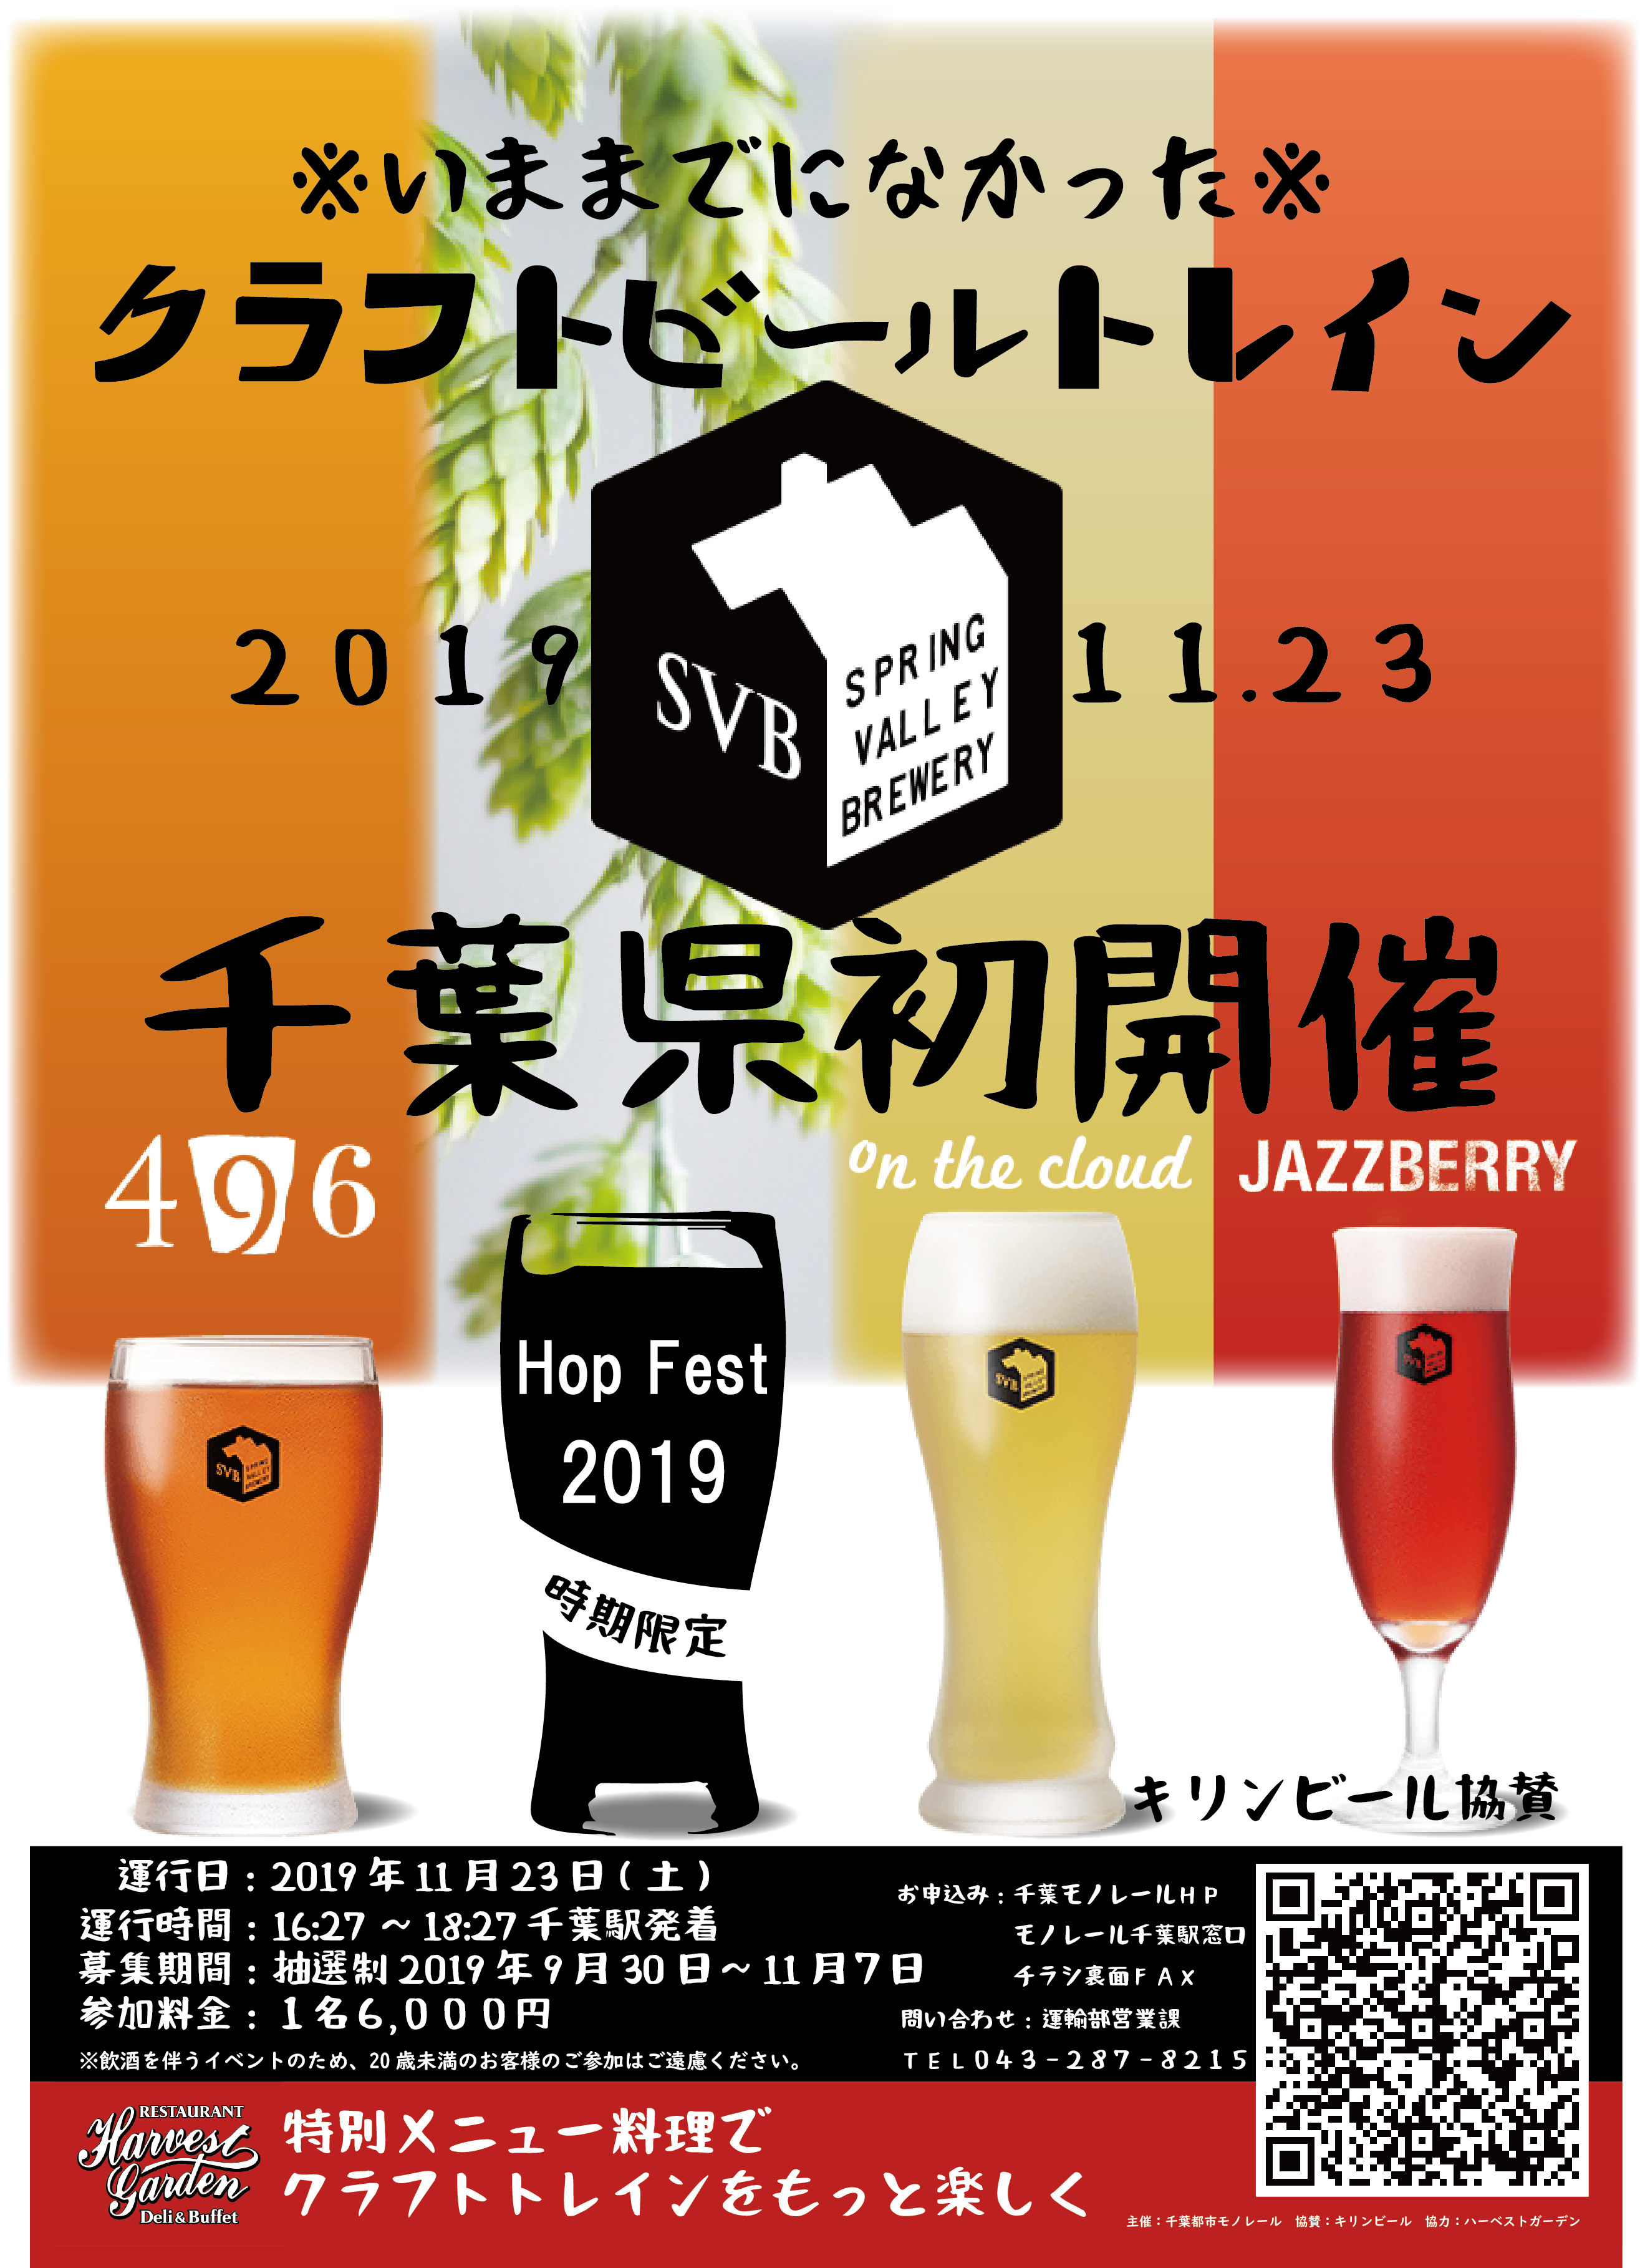 まもなく申込〆切 11 23開催 4種のビールを飲み比べ クラフトビールトレイン 千葉モノレール 日本ビアジャーナリスト協会